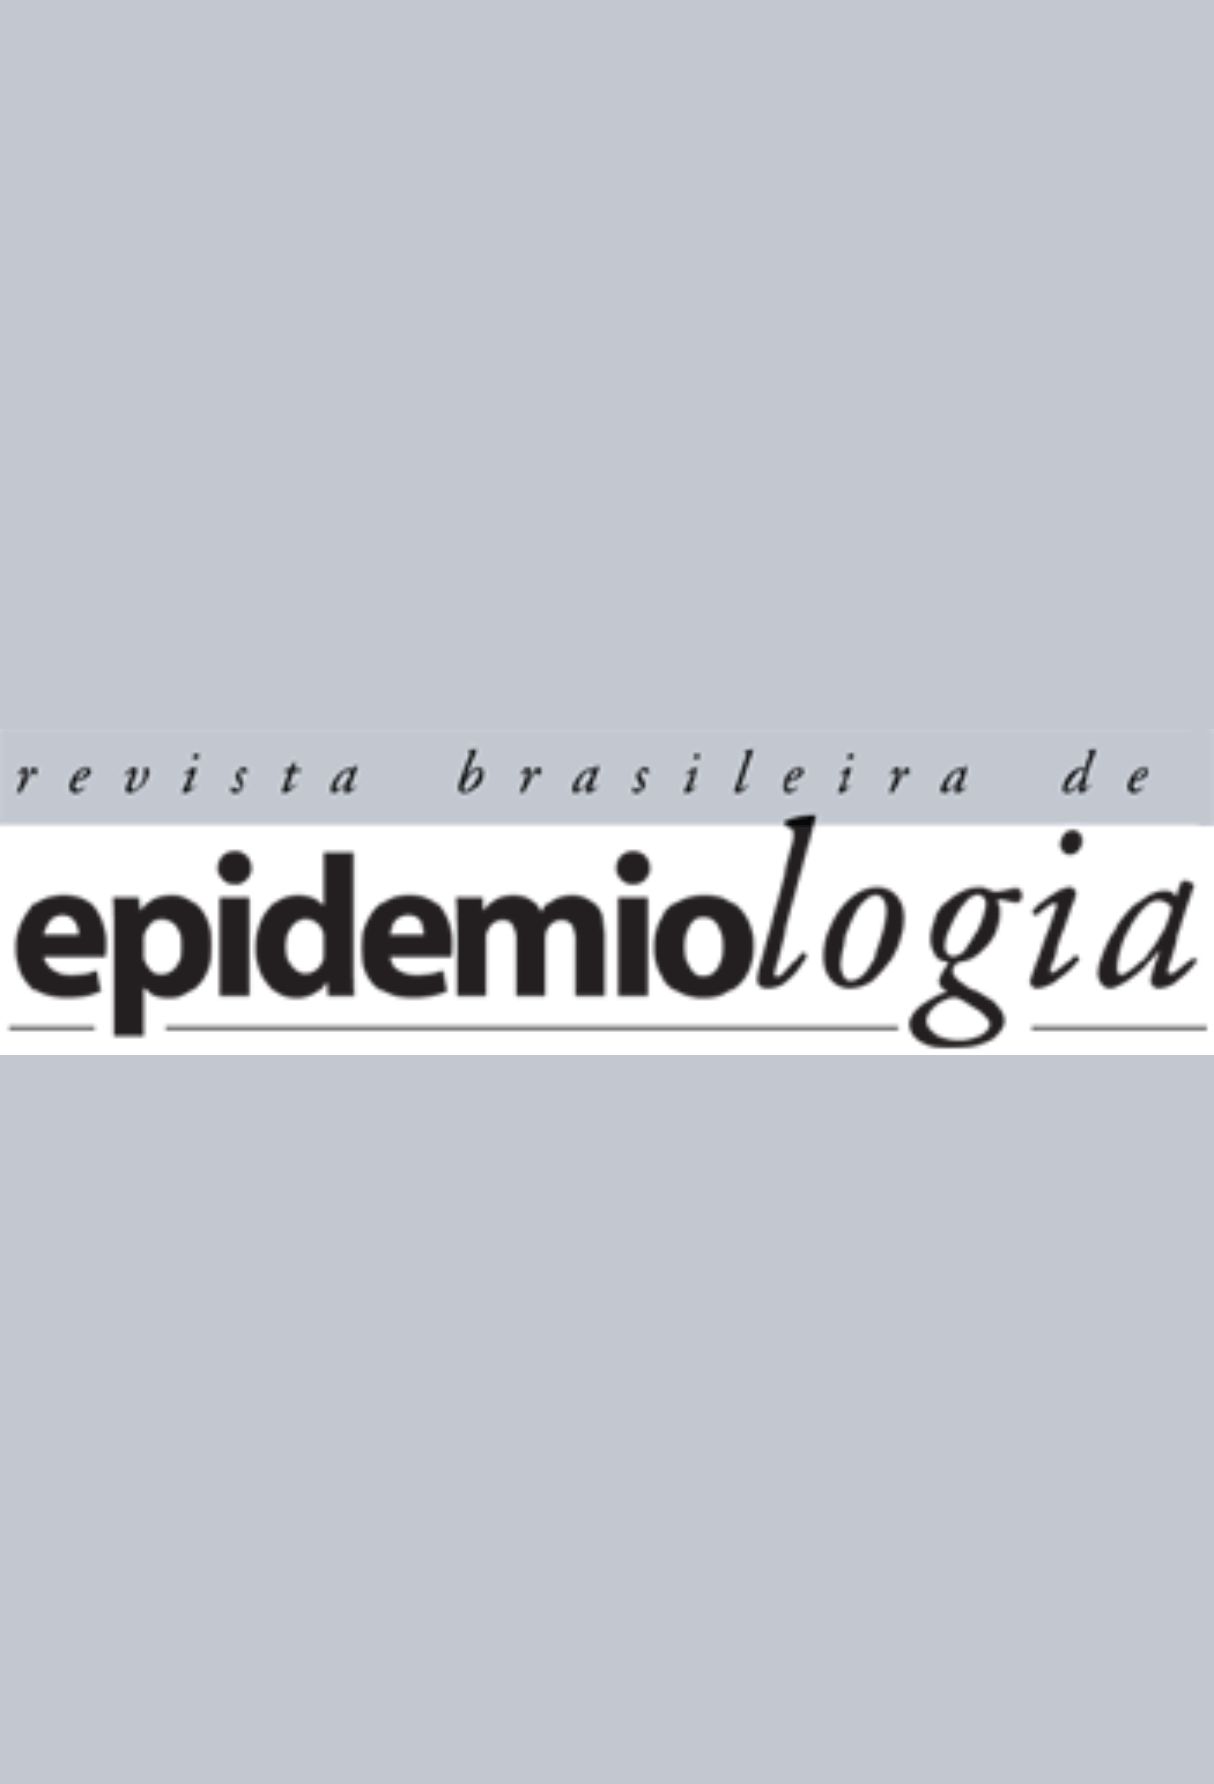 Capa: Revista Brasileira de Epidemiologia